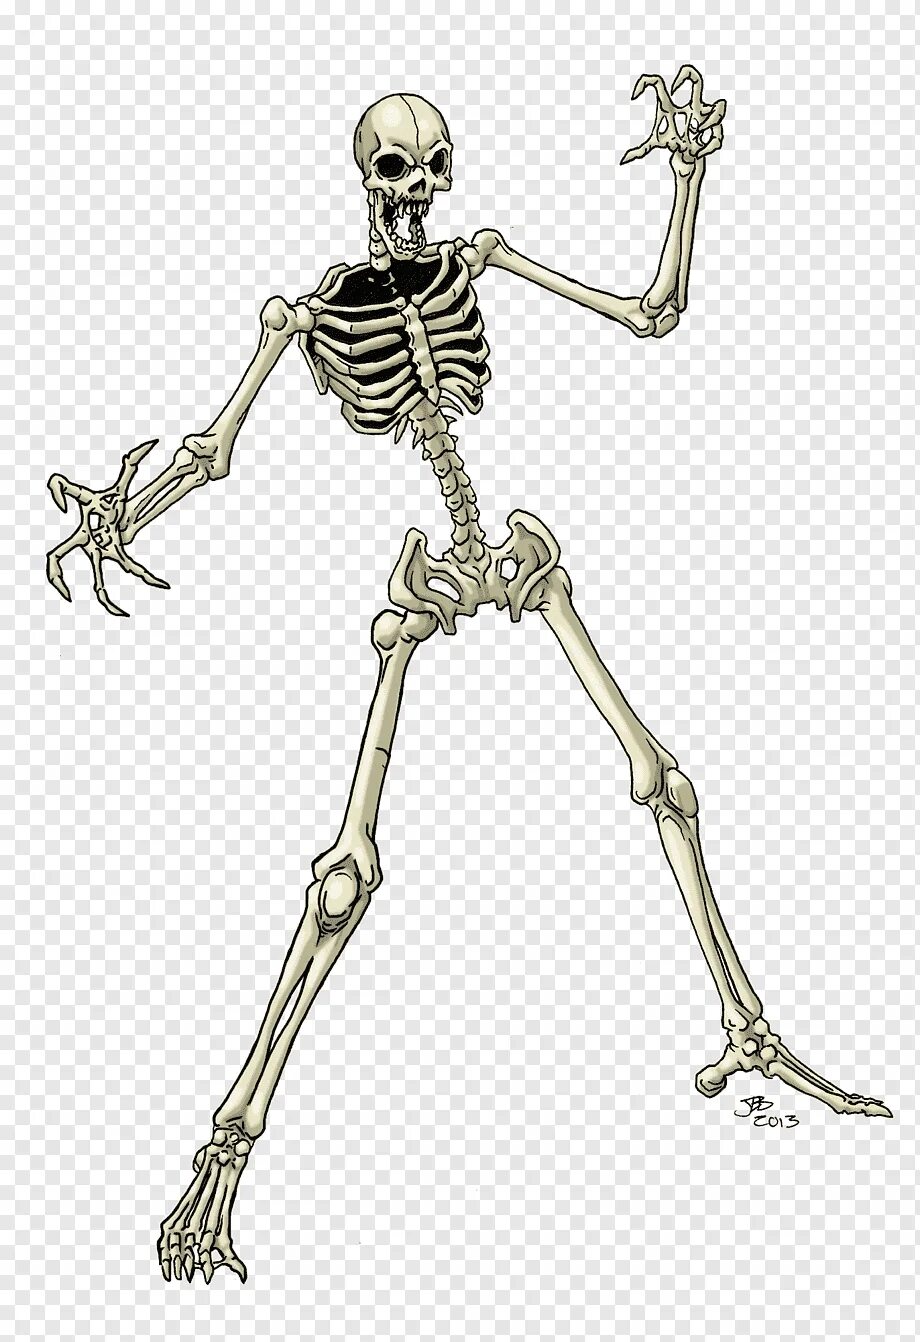 Облегченный скелет. Скелет человека. Скелет на прозрачном фоне. Скелет из игры. Скелет рисунок.